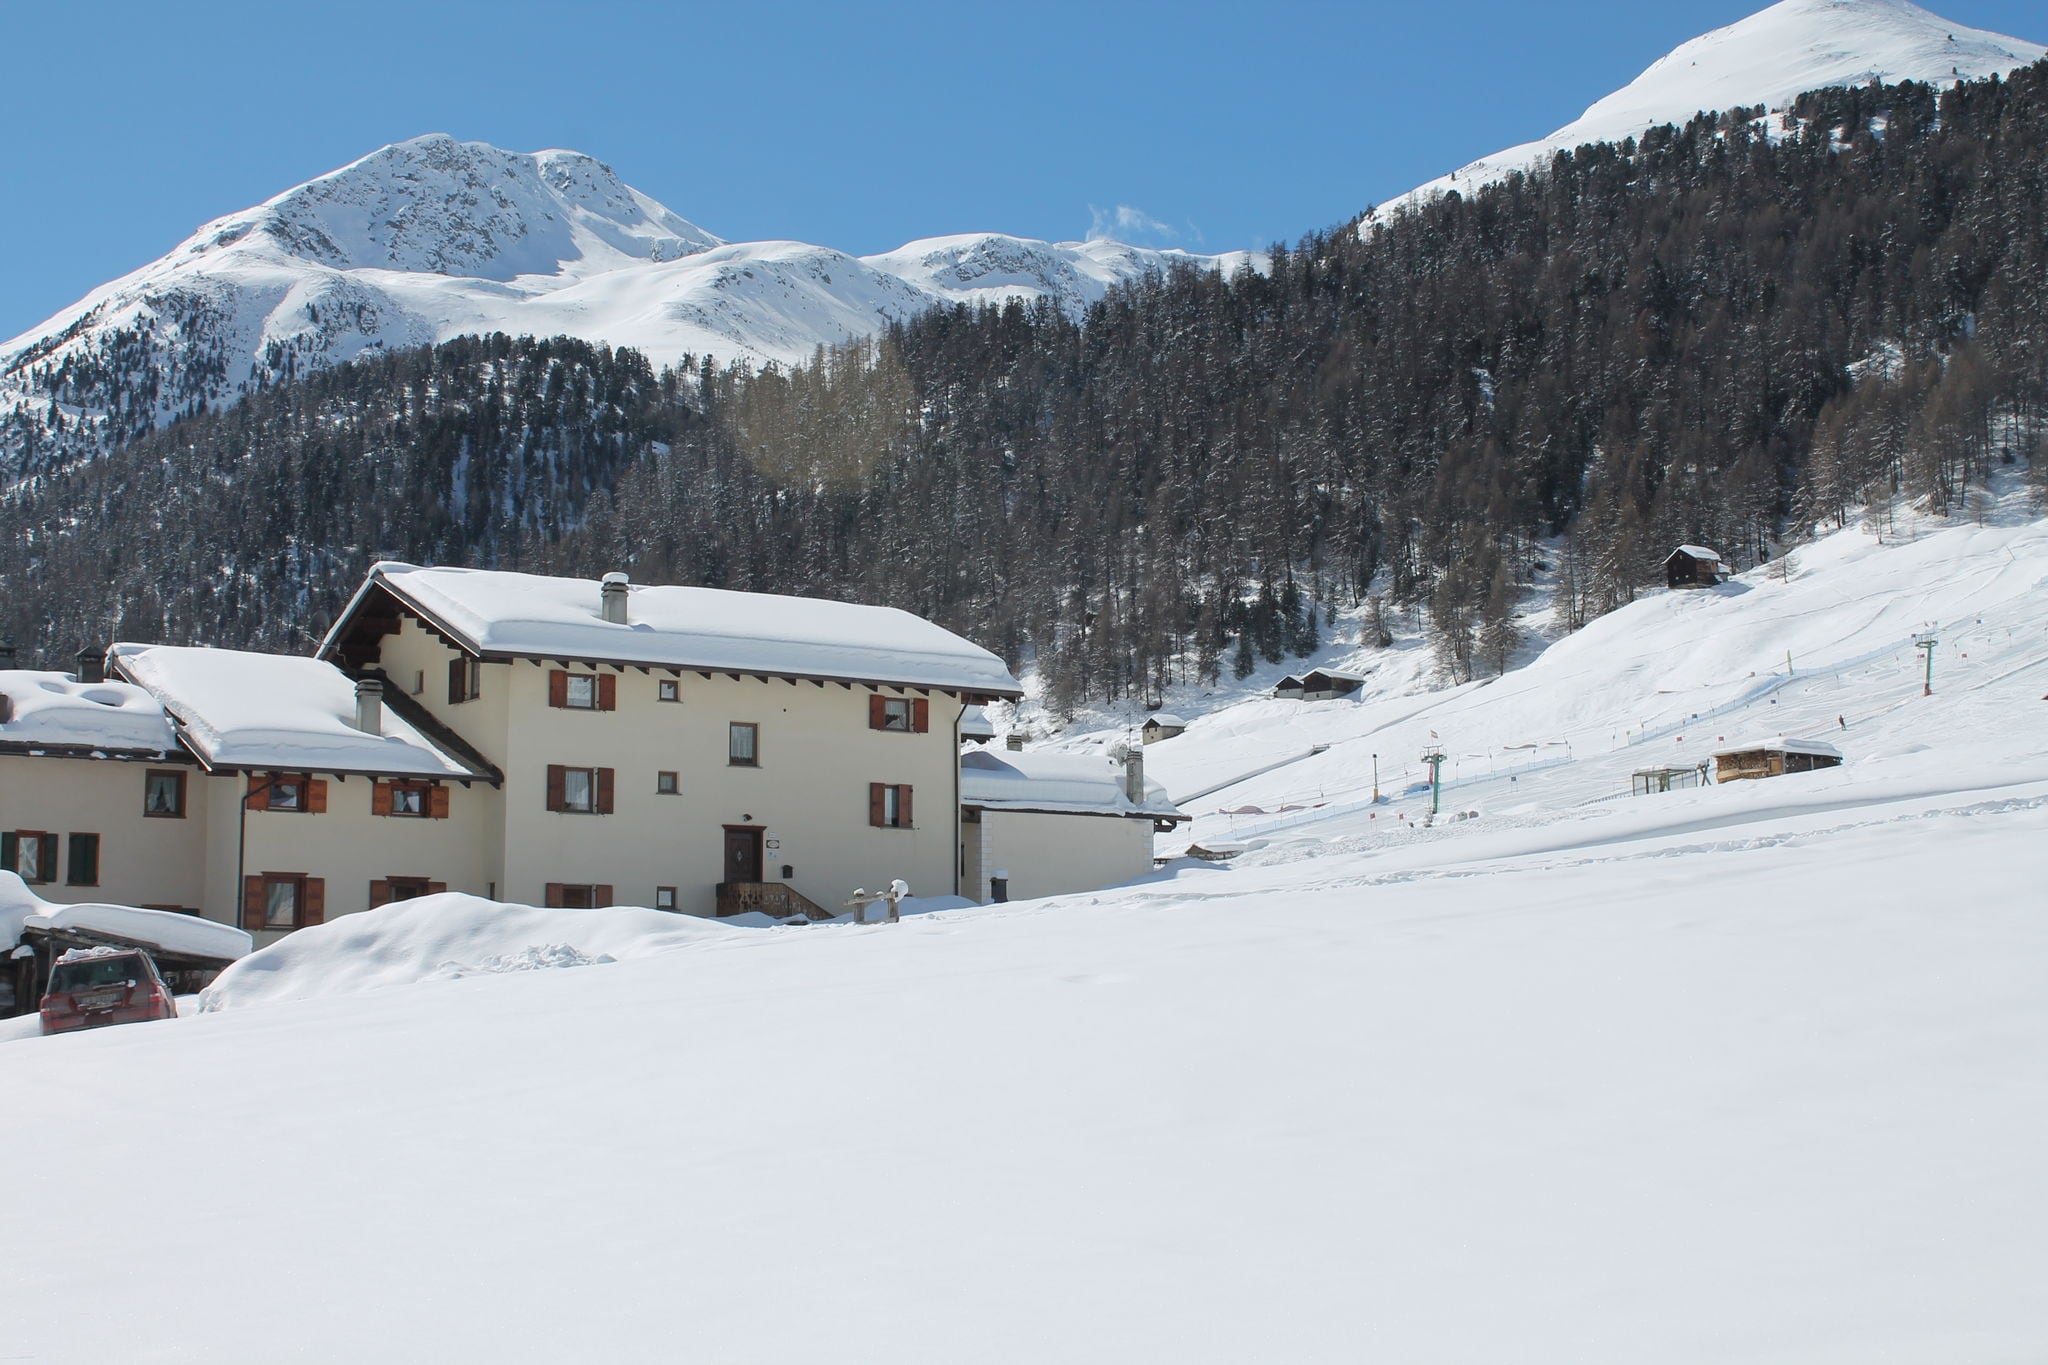 Pleasing Holiday Home in Livigno near Ski Area